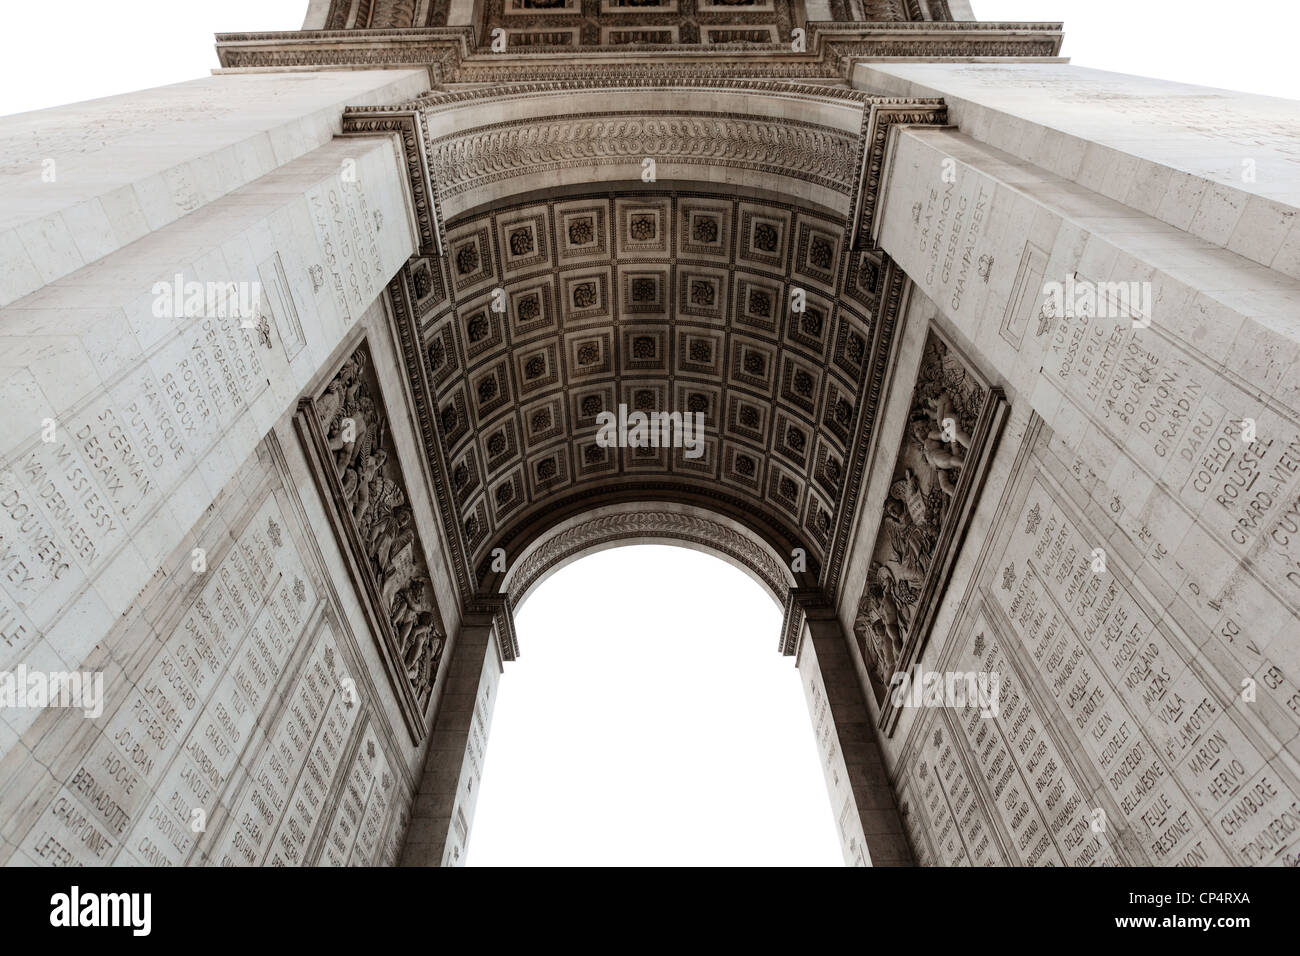 Détail de l'Arc de Triomphe ou Arc de Triomphe, Paris, France. Banque D'Images